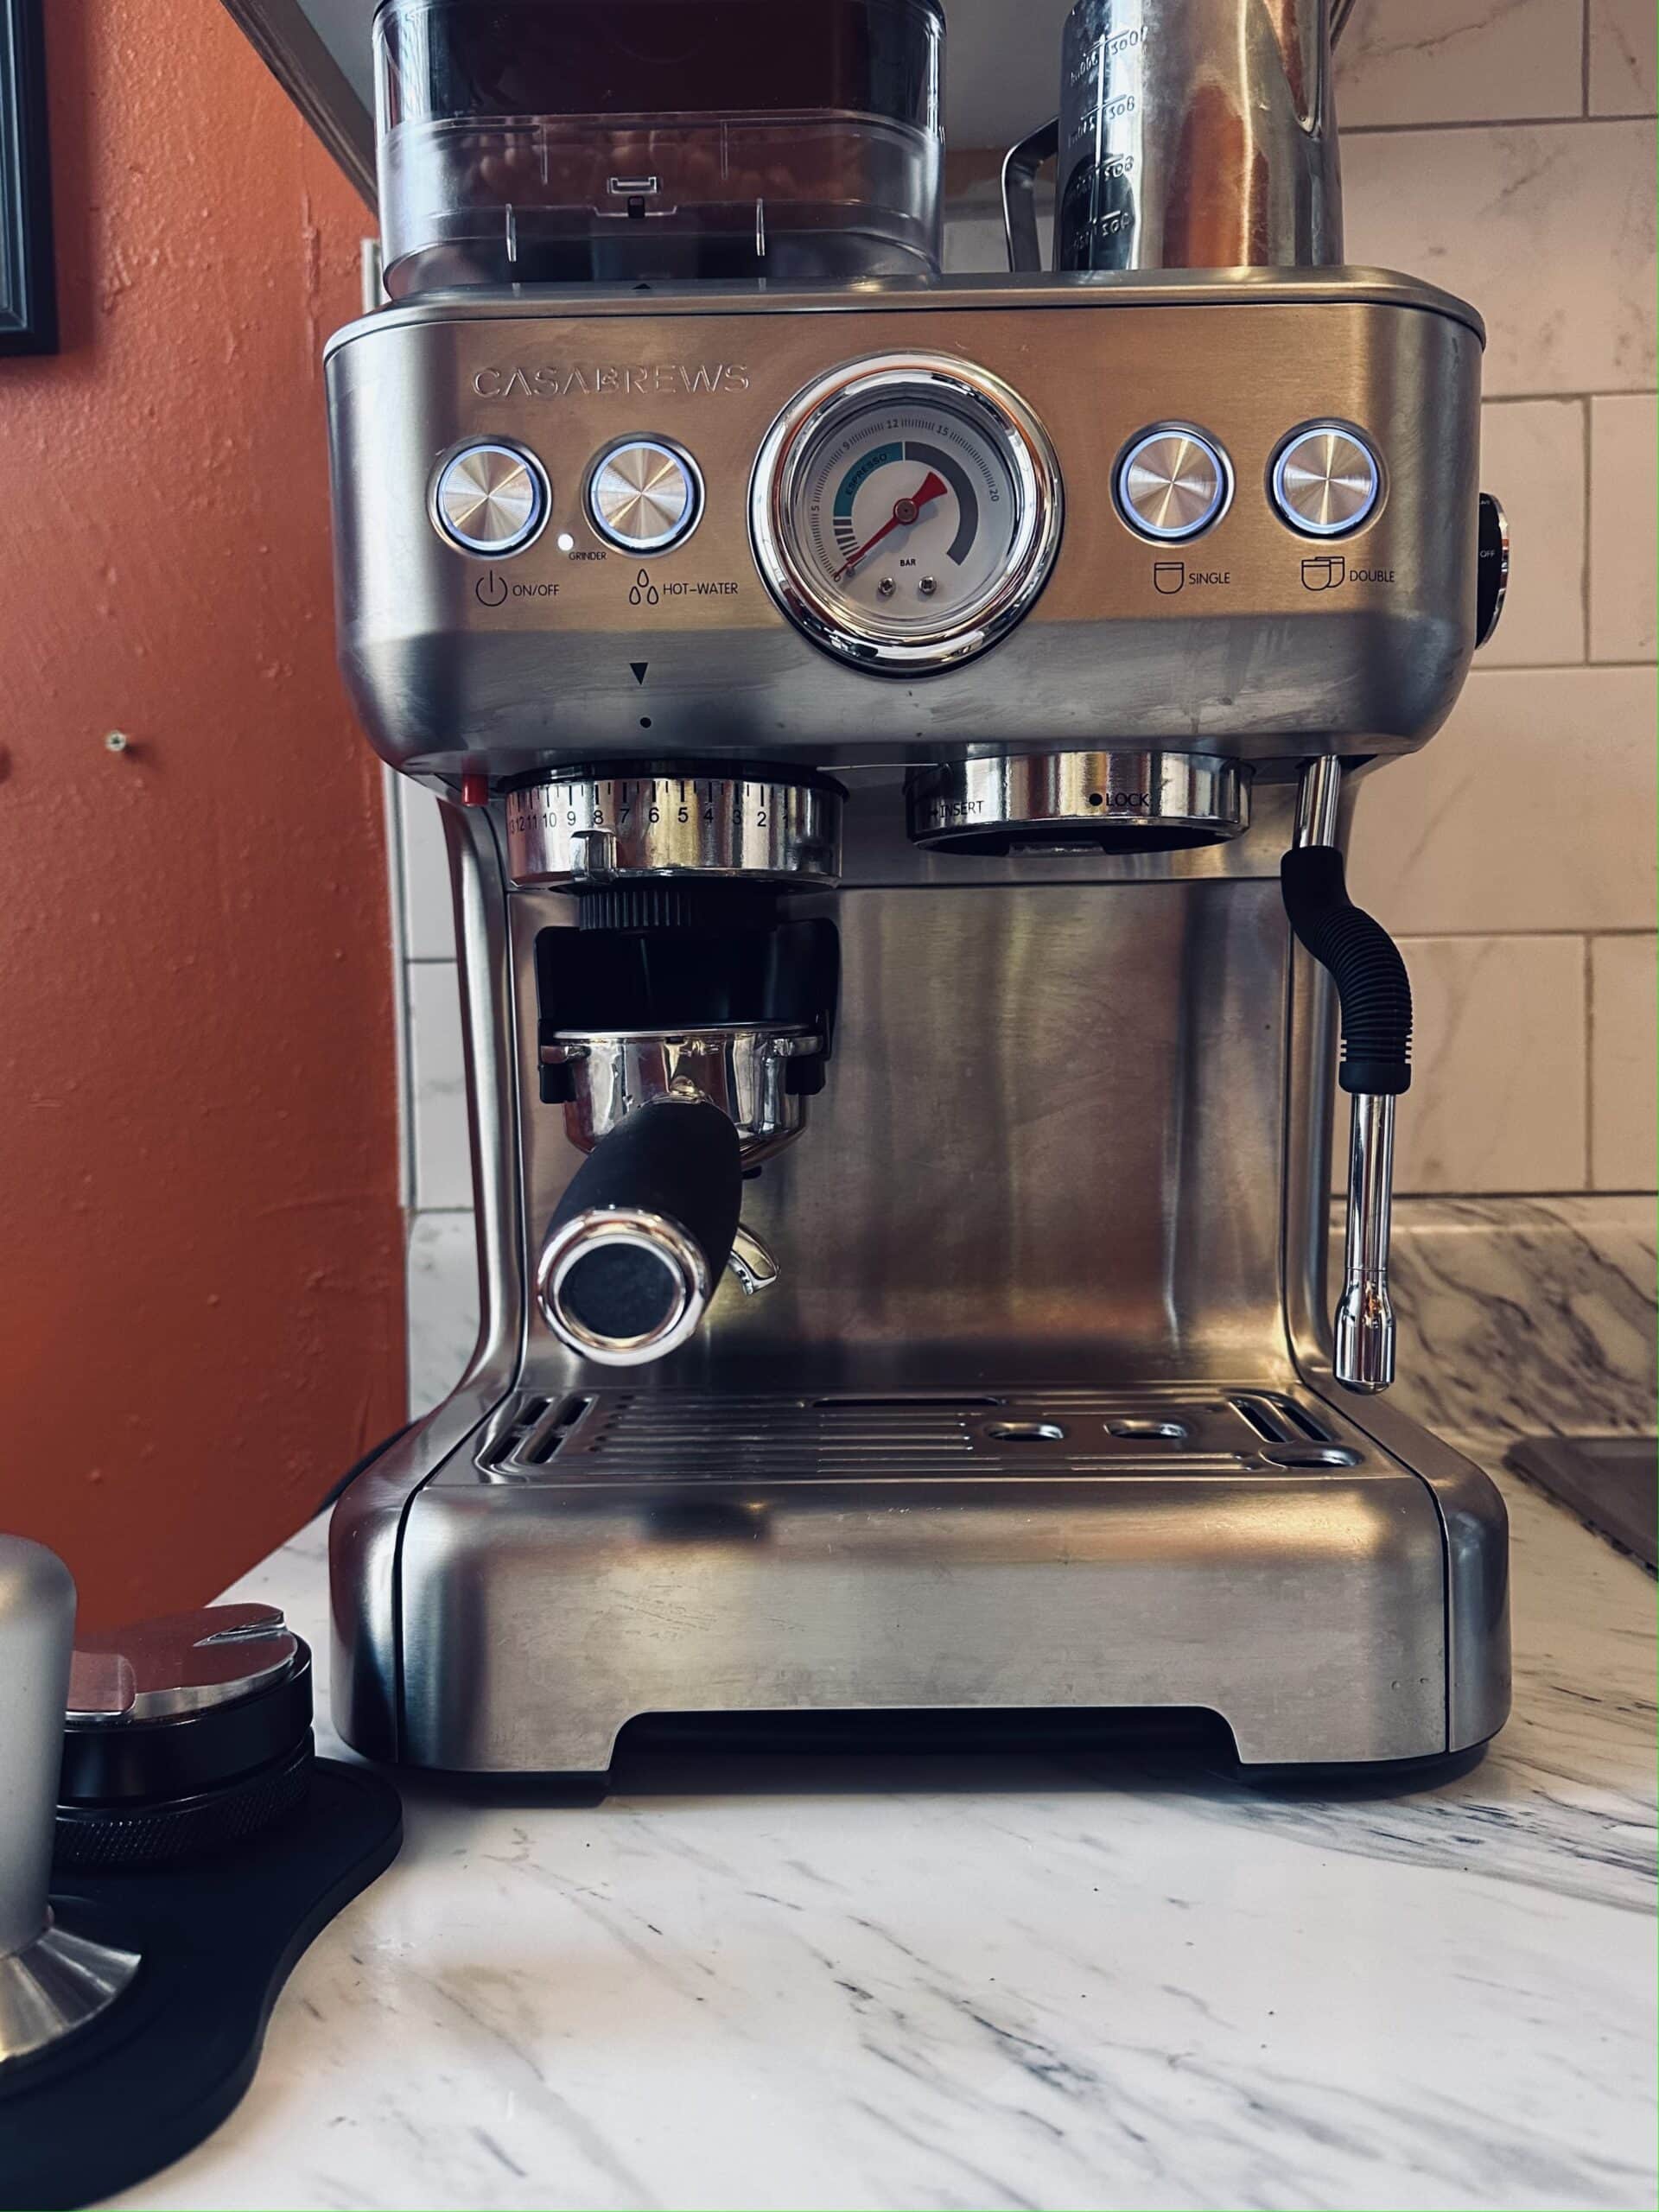 Casabrews Espresso Machine front